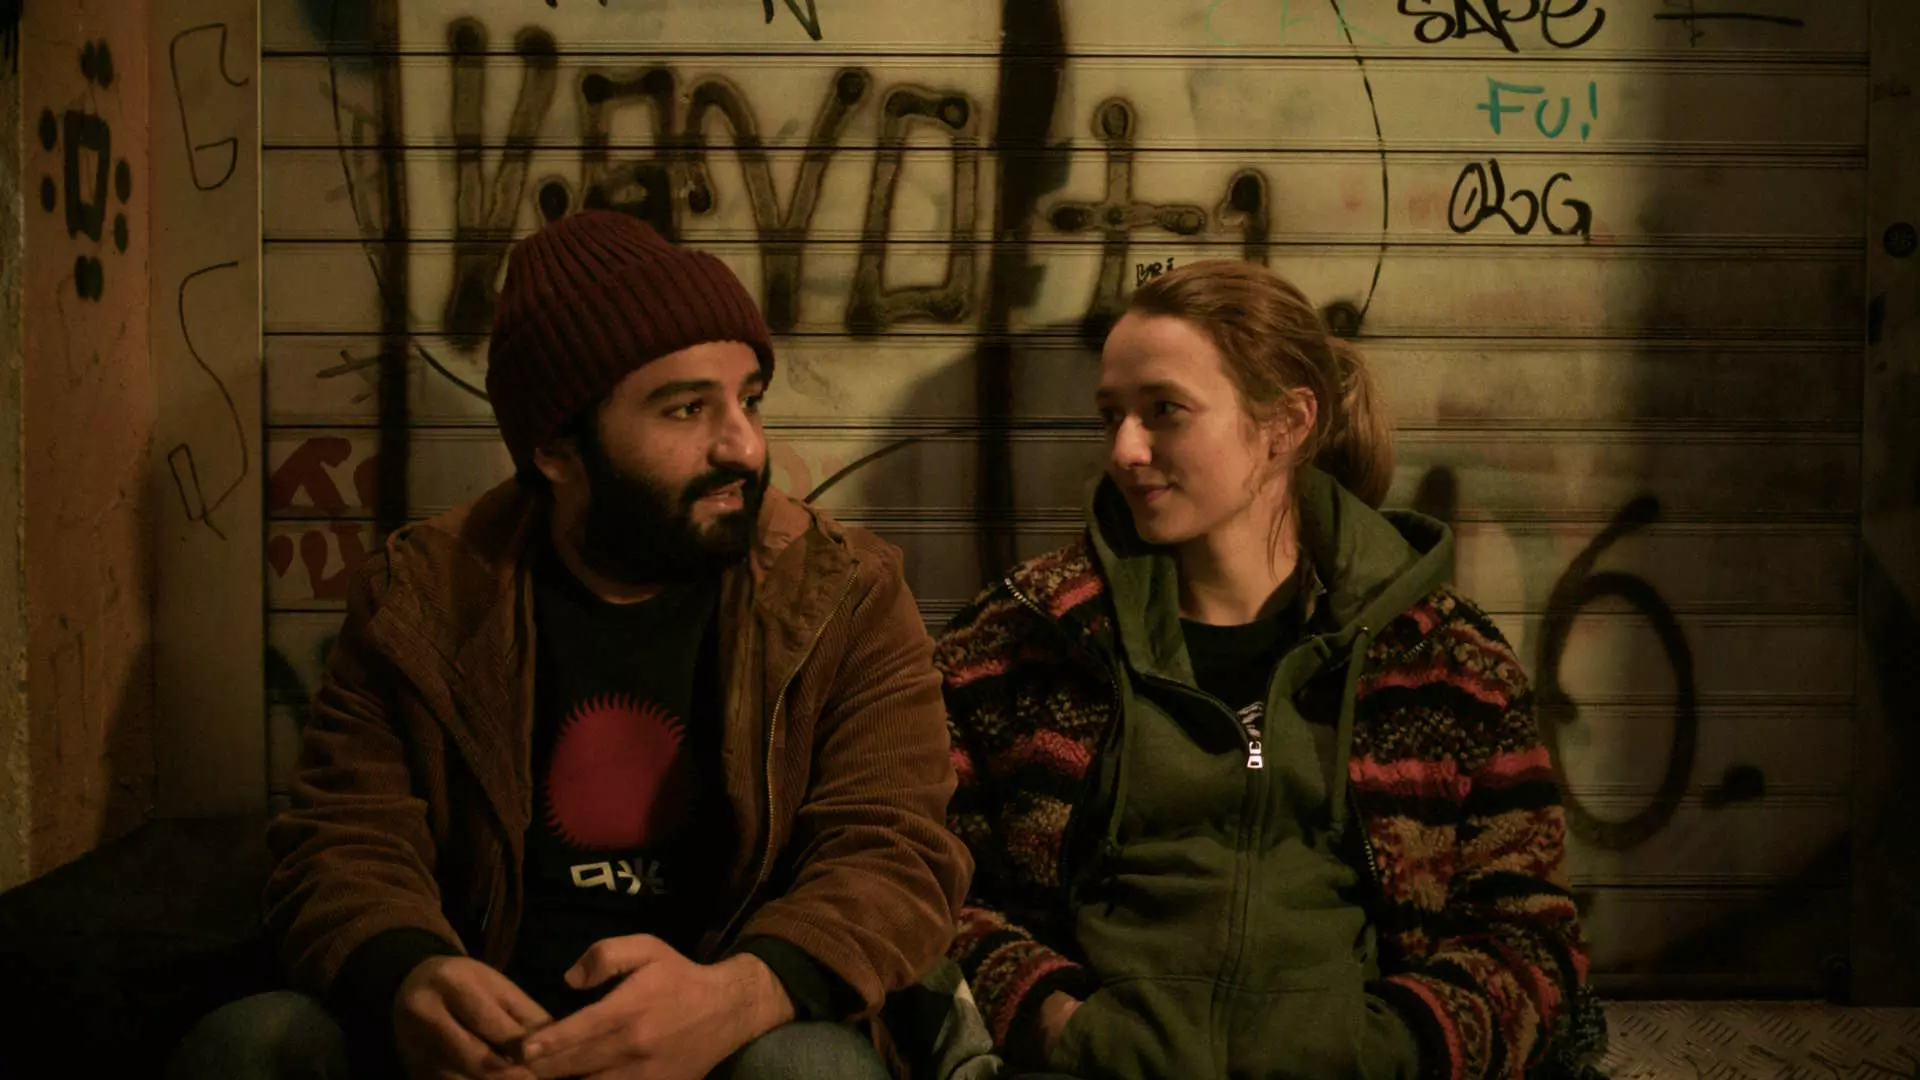 En ung mann og kvinne sitter på en benk. Veggen bak dem er rekket i grafitti. De ser ut til å ha en hyggelig samtale sammen.